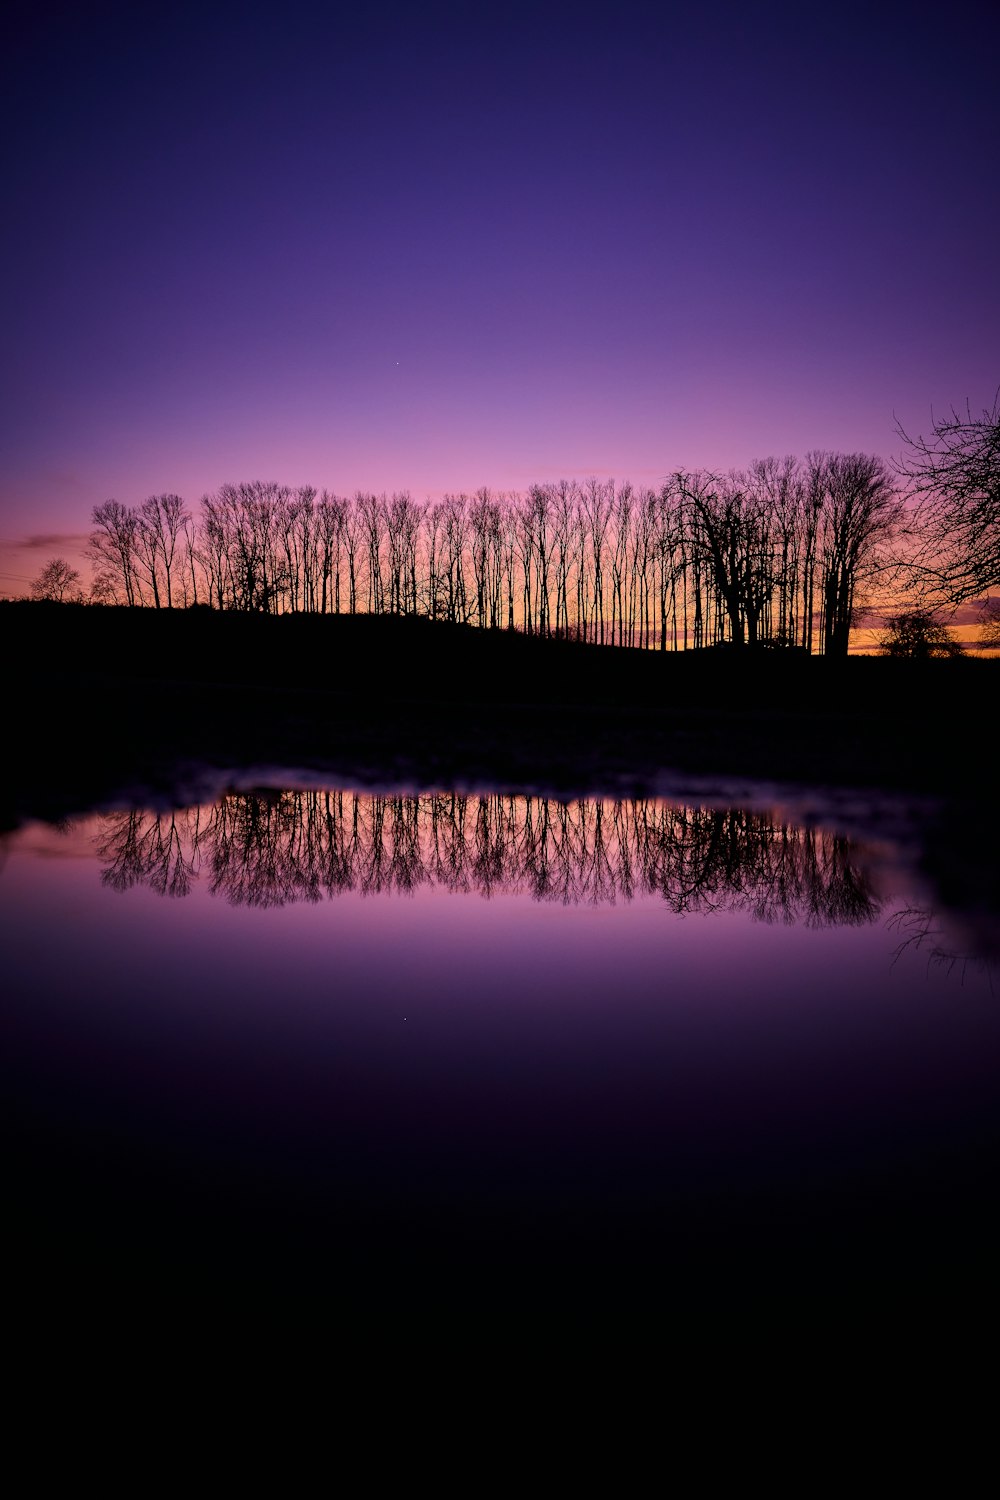 Un cielo púrpura con árboles reflejados en el agua